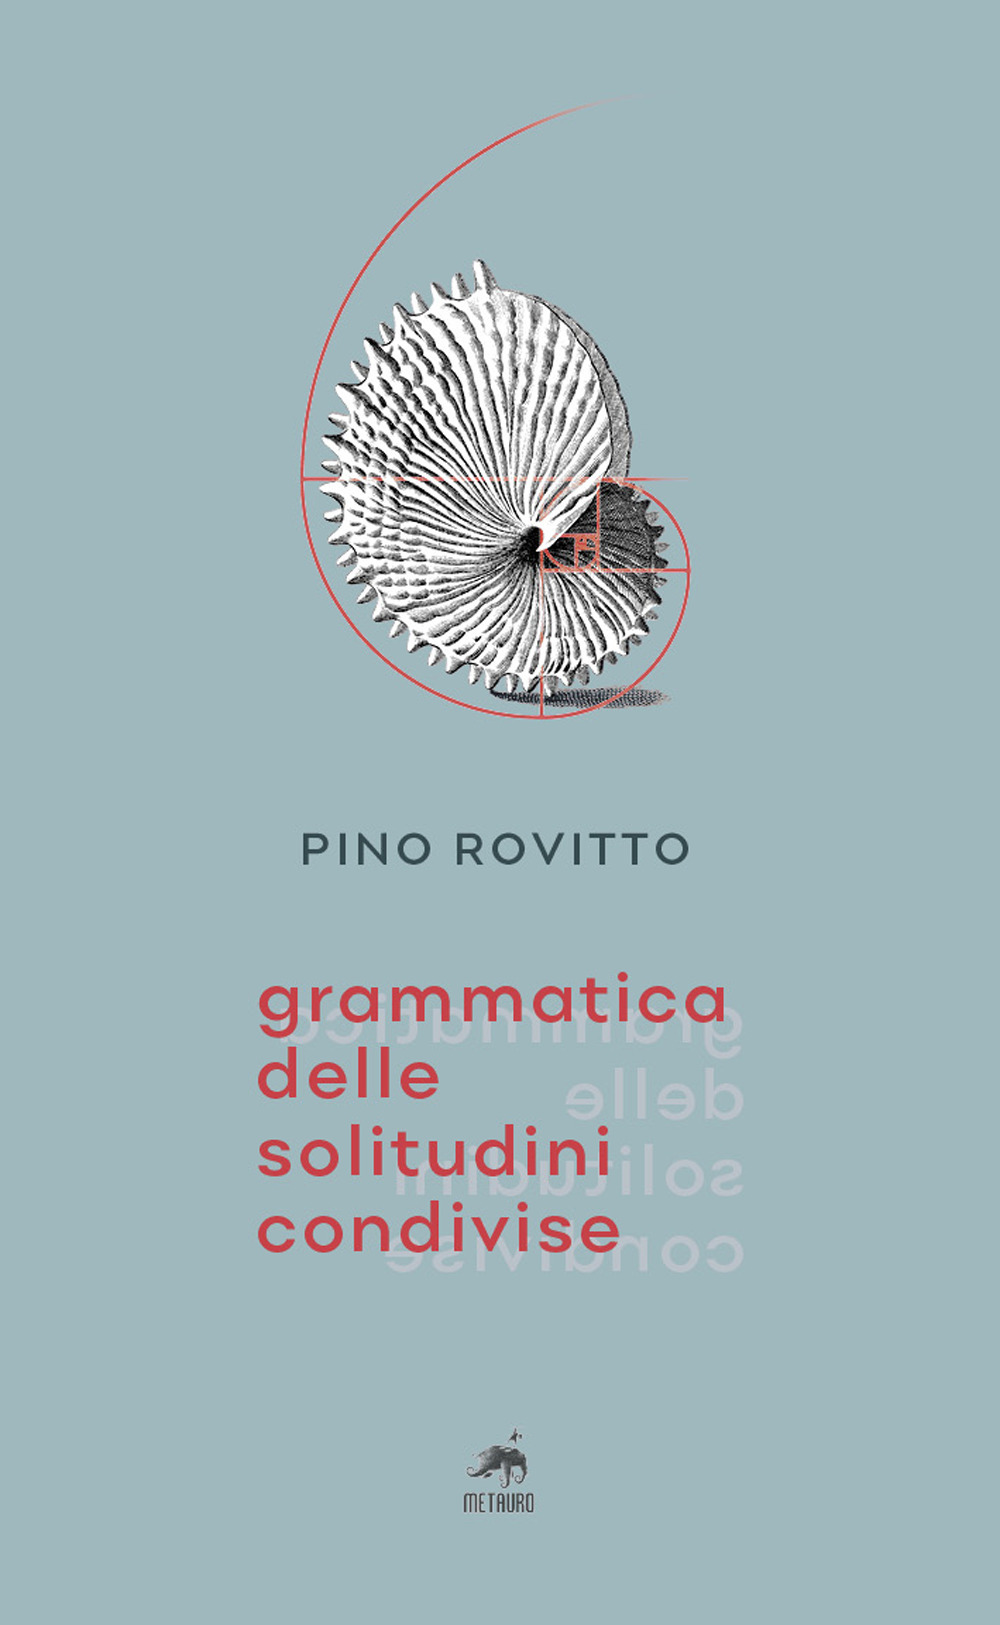 Image of Grammatica delle solitudini condivise